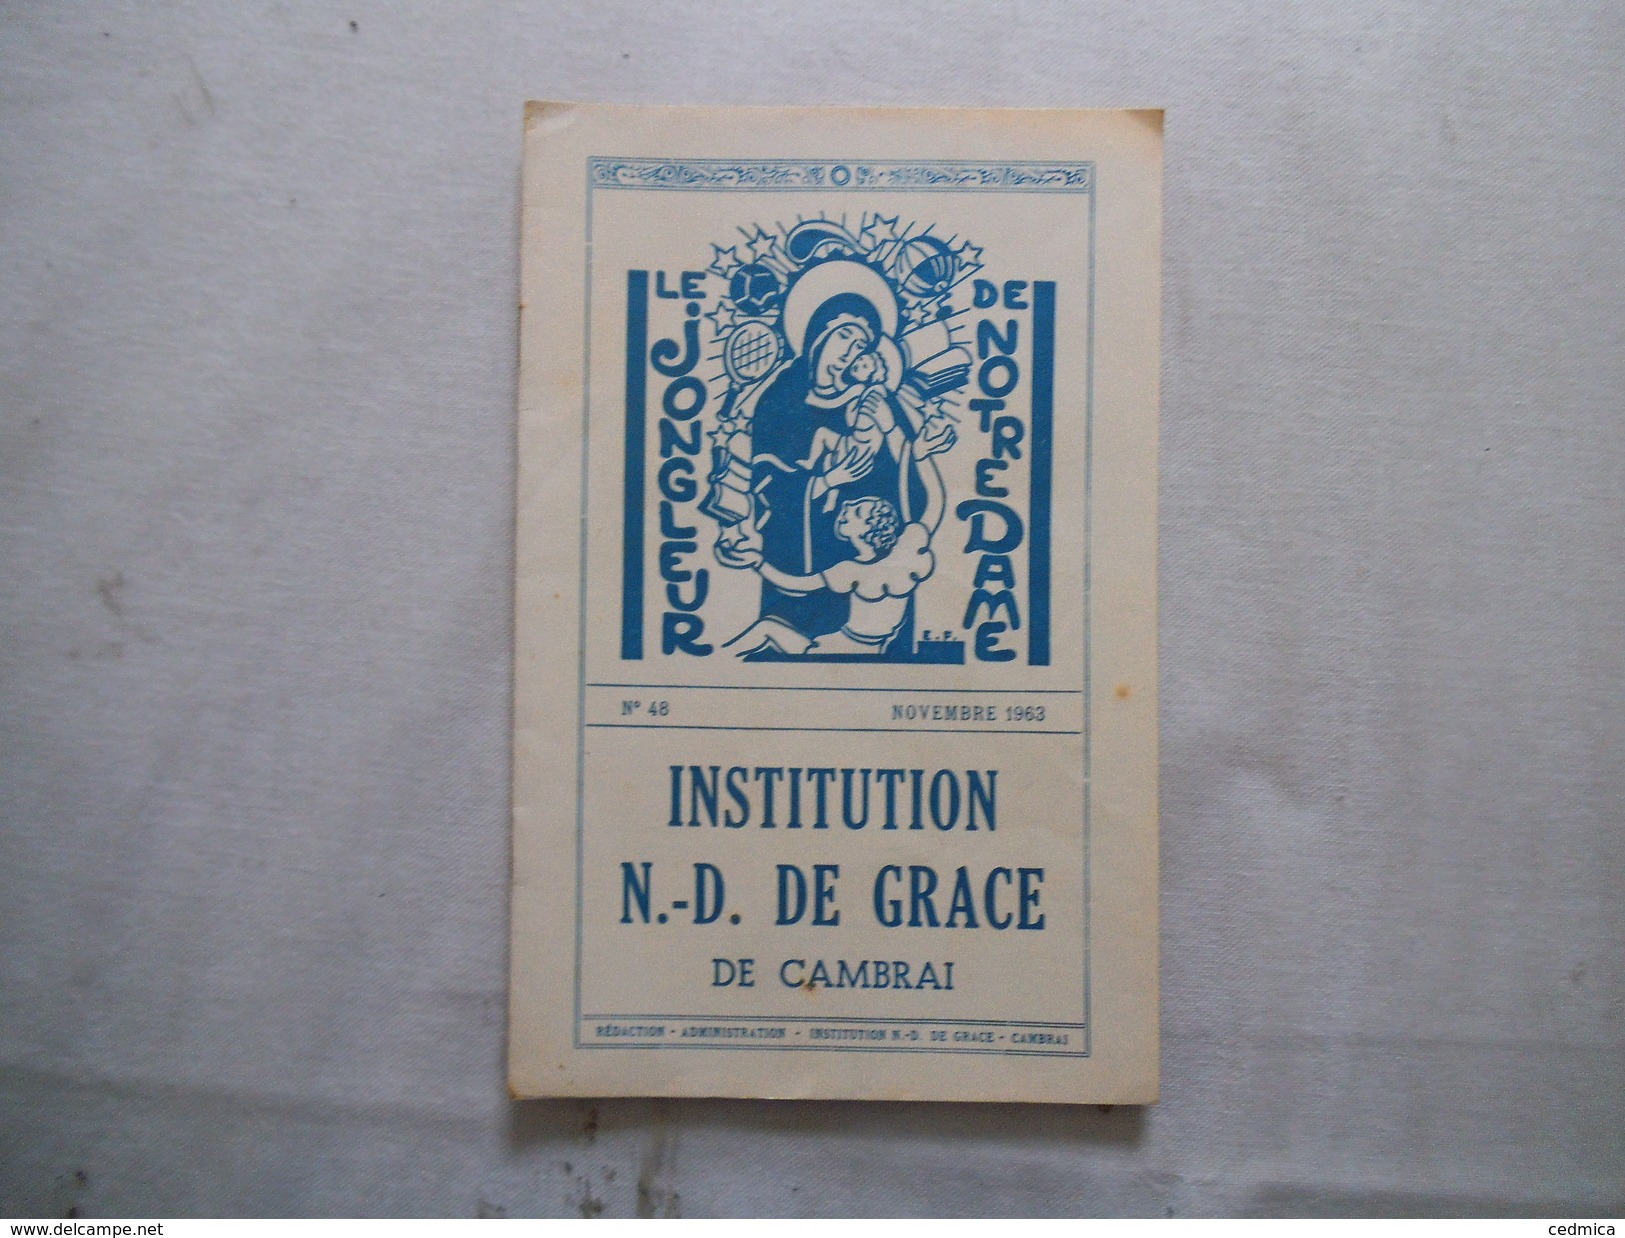 CAMBRAI INSTITUTION NOTRE-DAME DE GRACE LE JONGLEUR DE NOTRE DAME N°48 NOVEMBRE 1963 - Religion & Esotericism